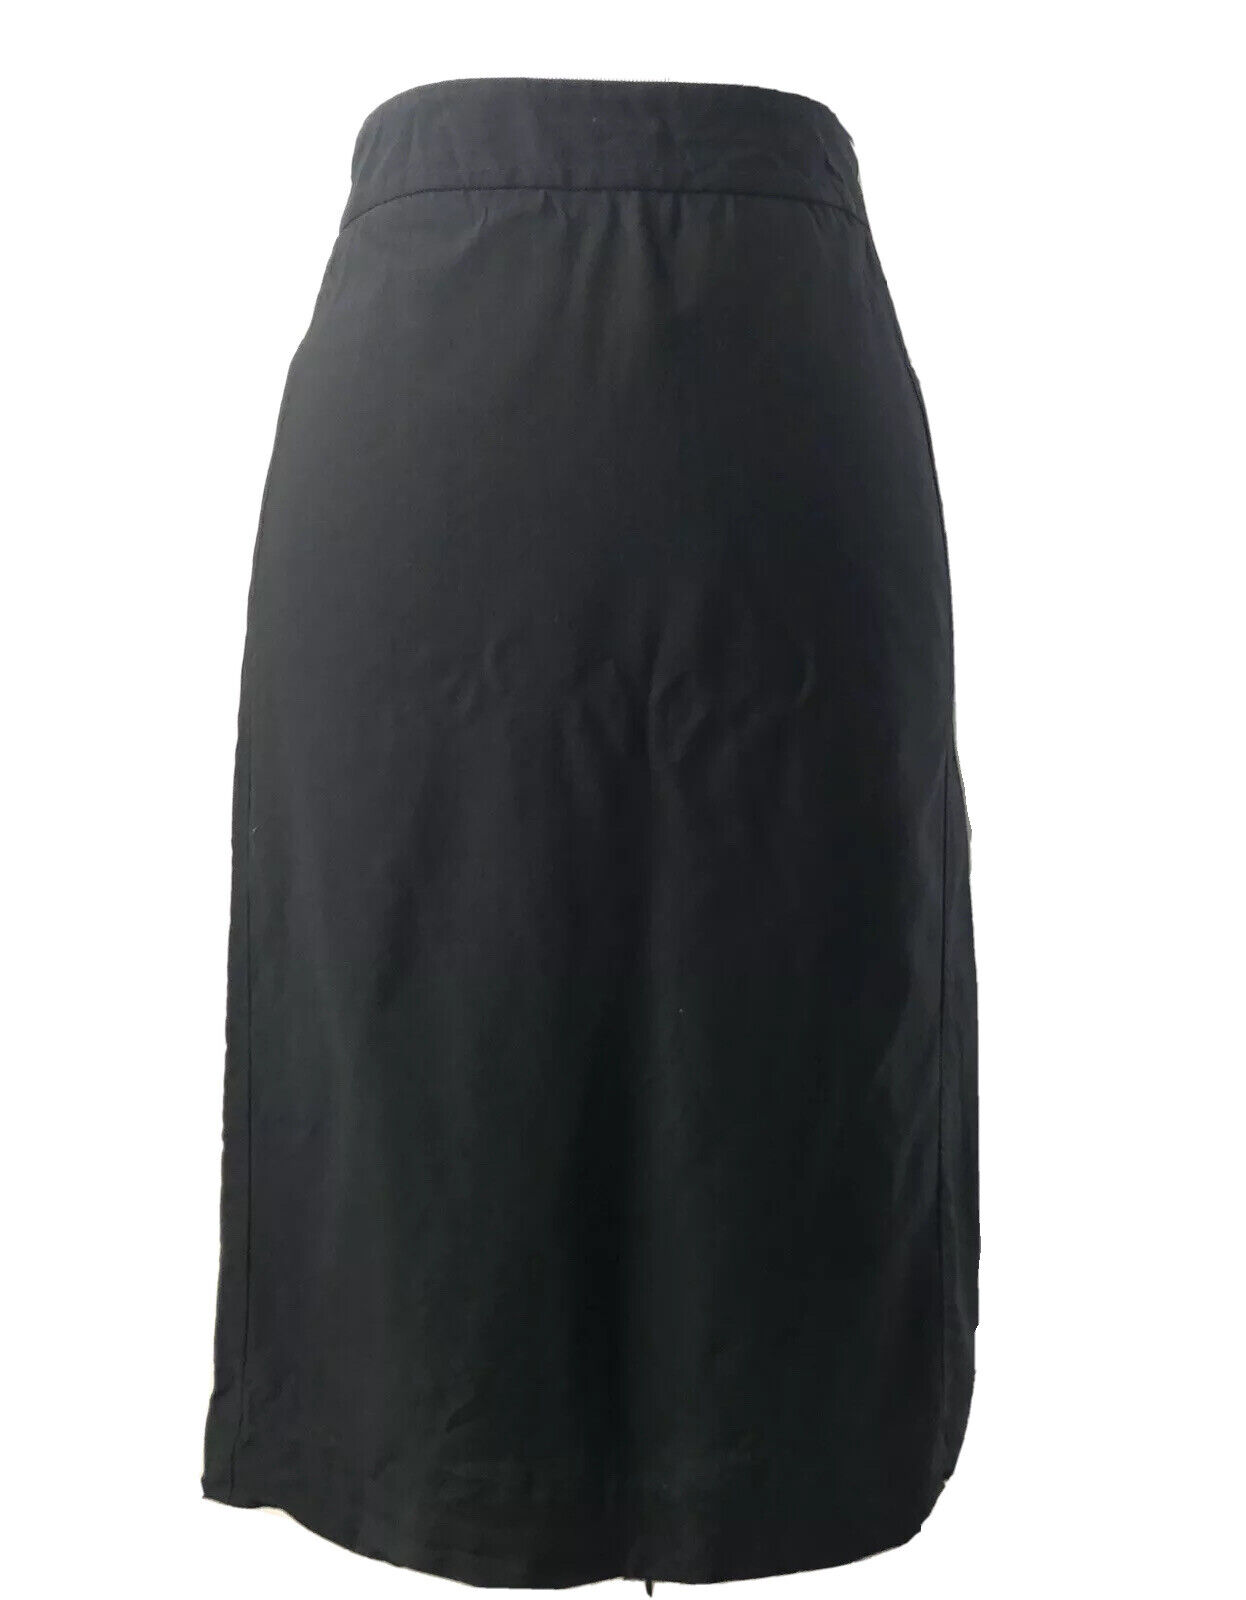 Banana Republic Black Skirt Straight Knee Length Slit Wool Lycra Sz 4 Lined